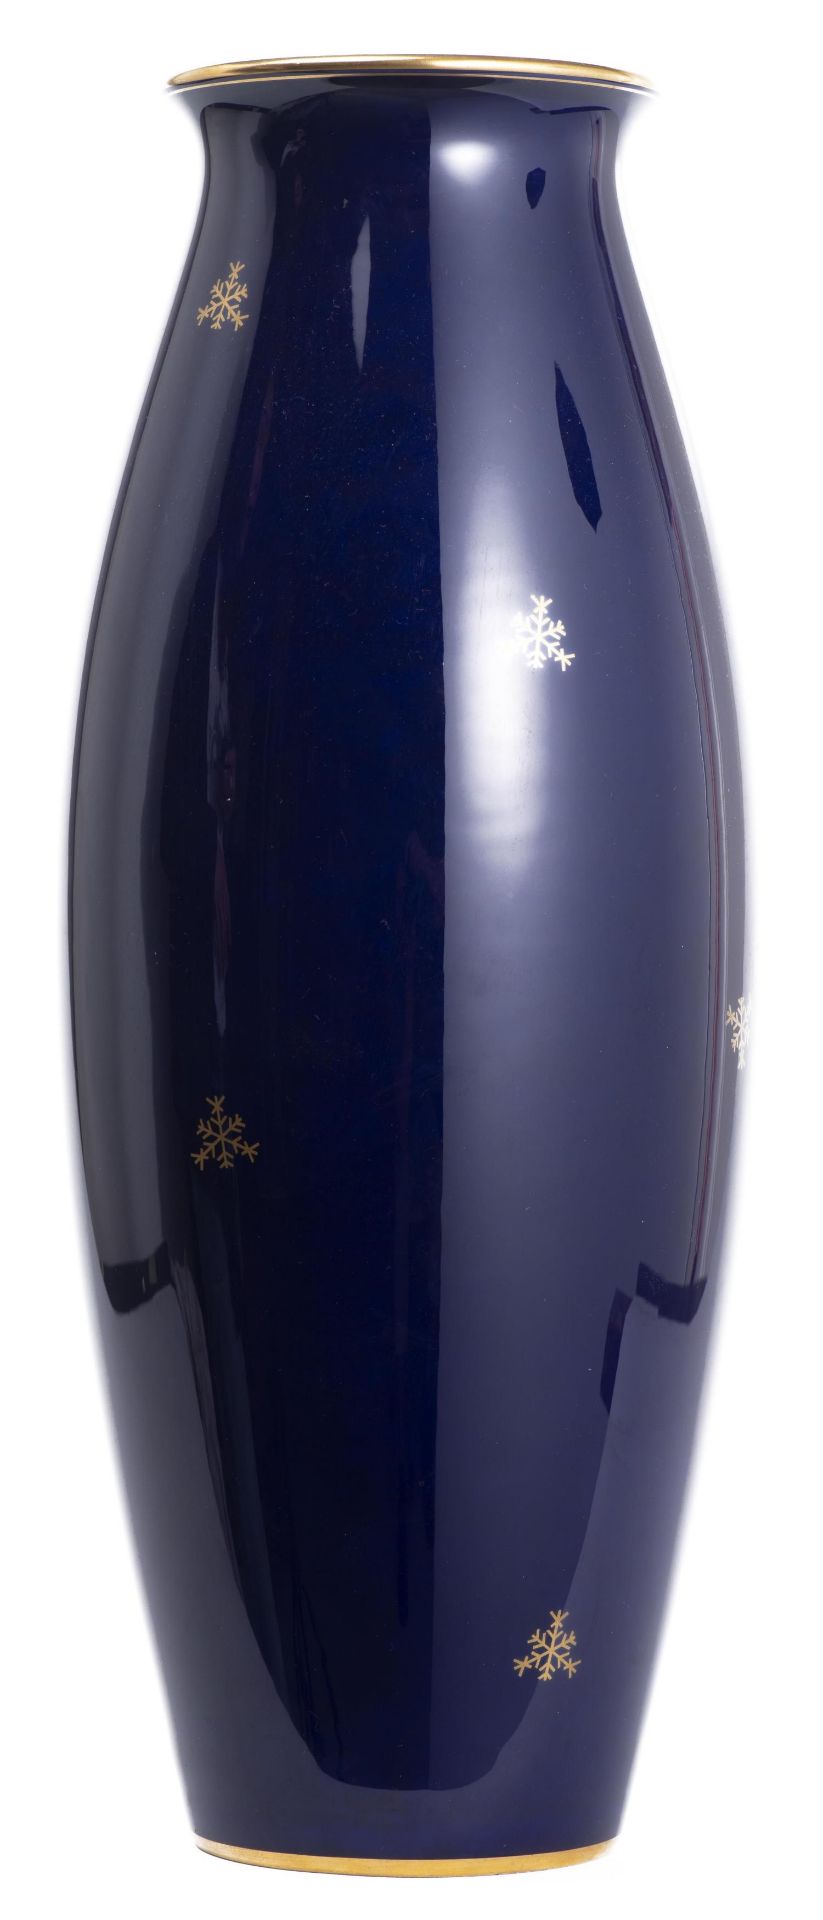 Sèvres, vase en porcelaine bleu nuit avec des motifs dorés de cristaux de neige, [...] - Bild 3 aus 5